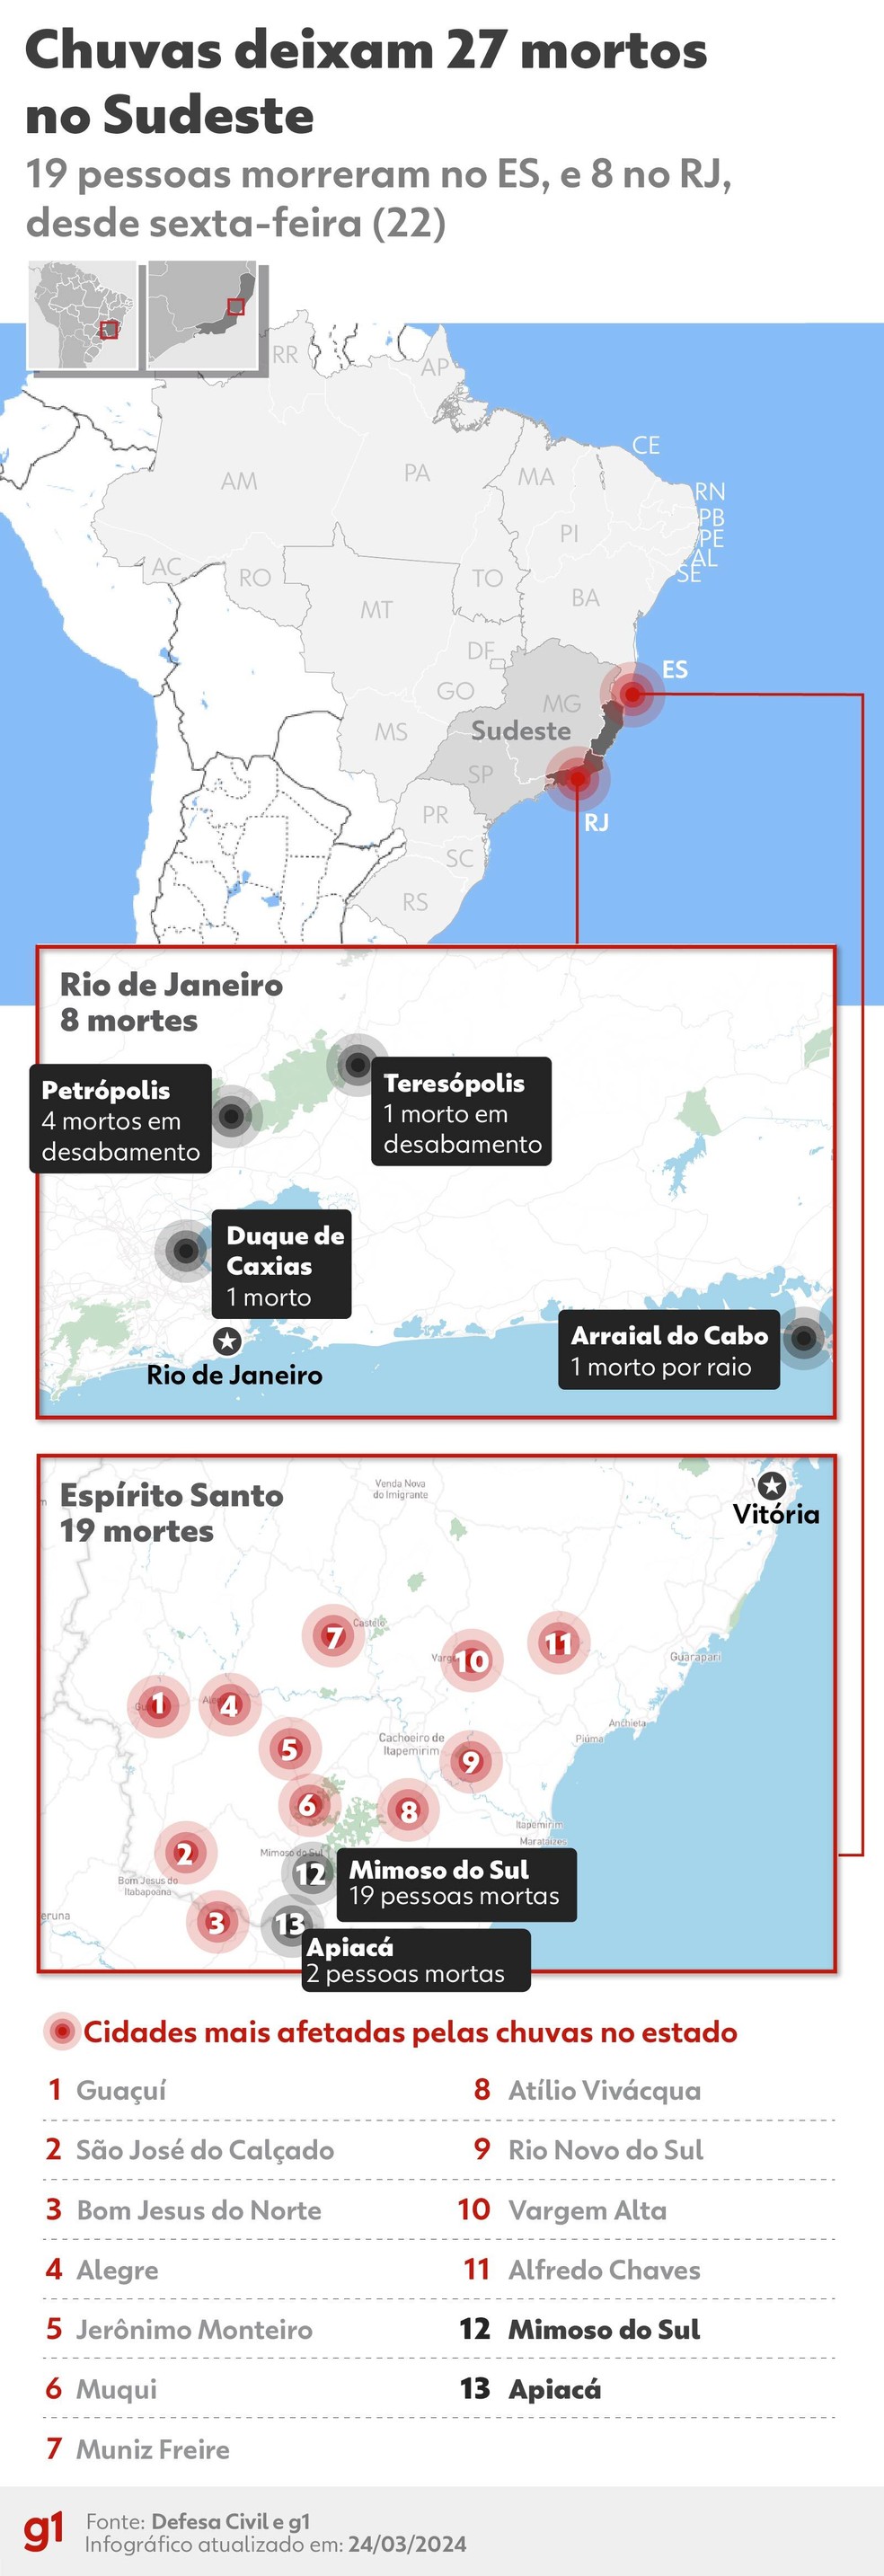 Mapa mostra tragédia da chuva no Sudeste do Brasil, Arte Espírito Santo — Foto: Wagner Magalhães/ Arte g1